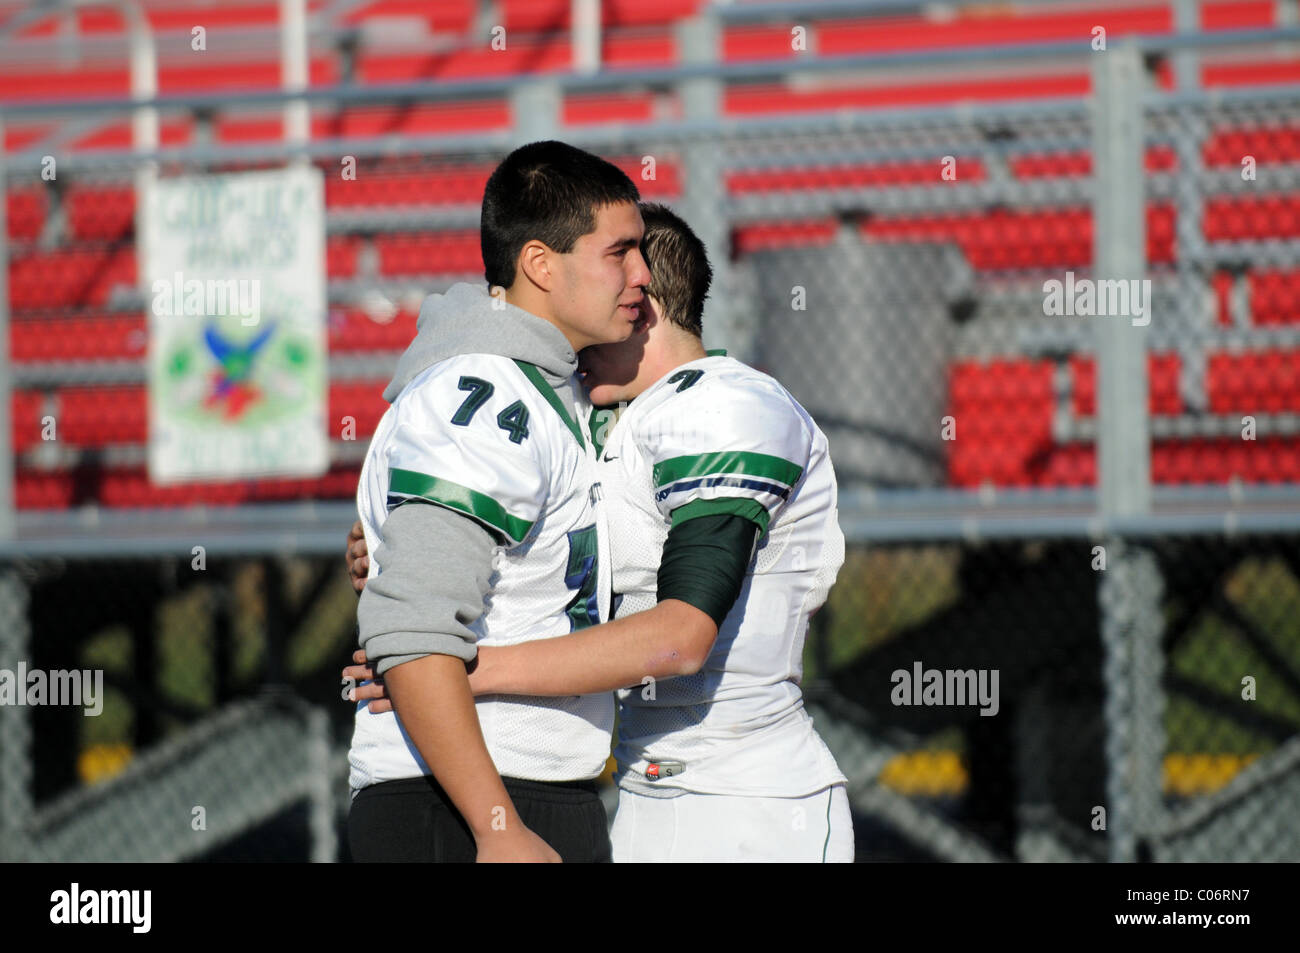 Zwei High School Football spieler Exchange einen emotionalen Umarmung nach einem post-Saison Endspielverlust. USA. Stockfoto